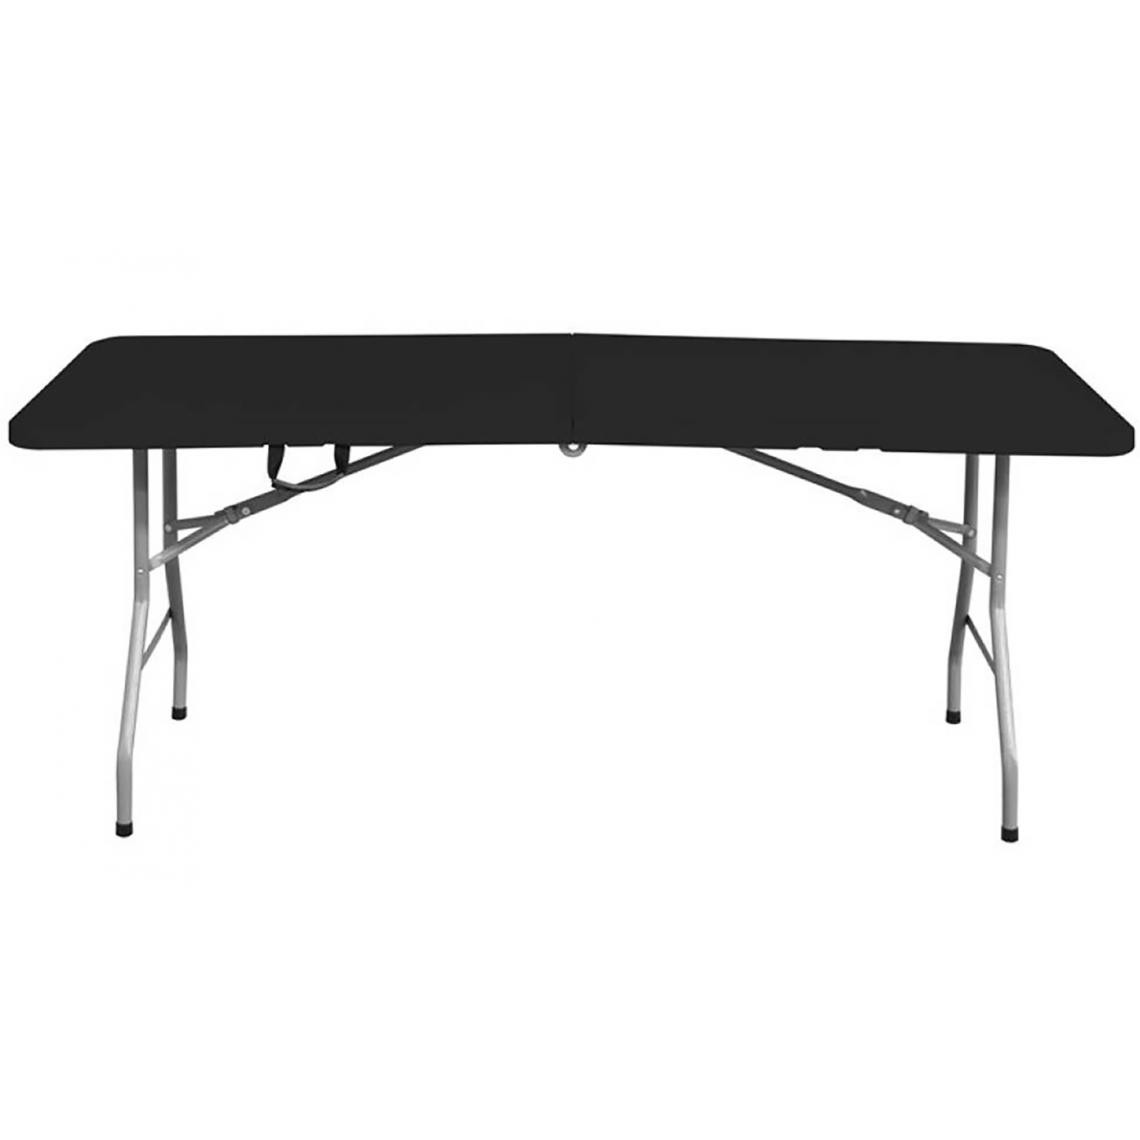 Pegane - Table de jardin pliante rectangulaire en métal coloris noir  - Longueur 180 x Profondeur 74 x Hauteur 74 cm - Tables de jardin